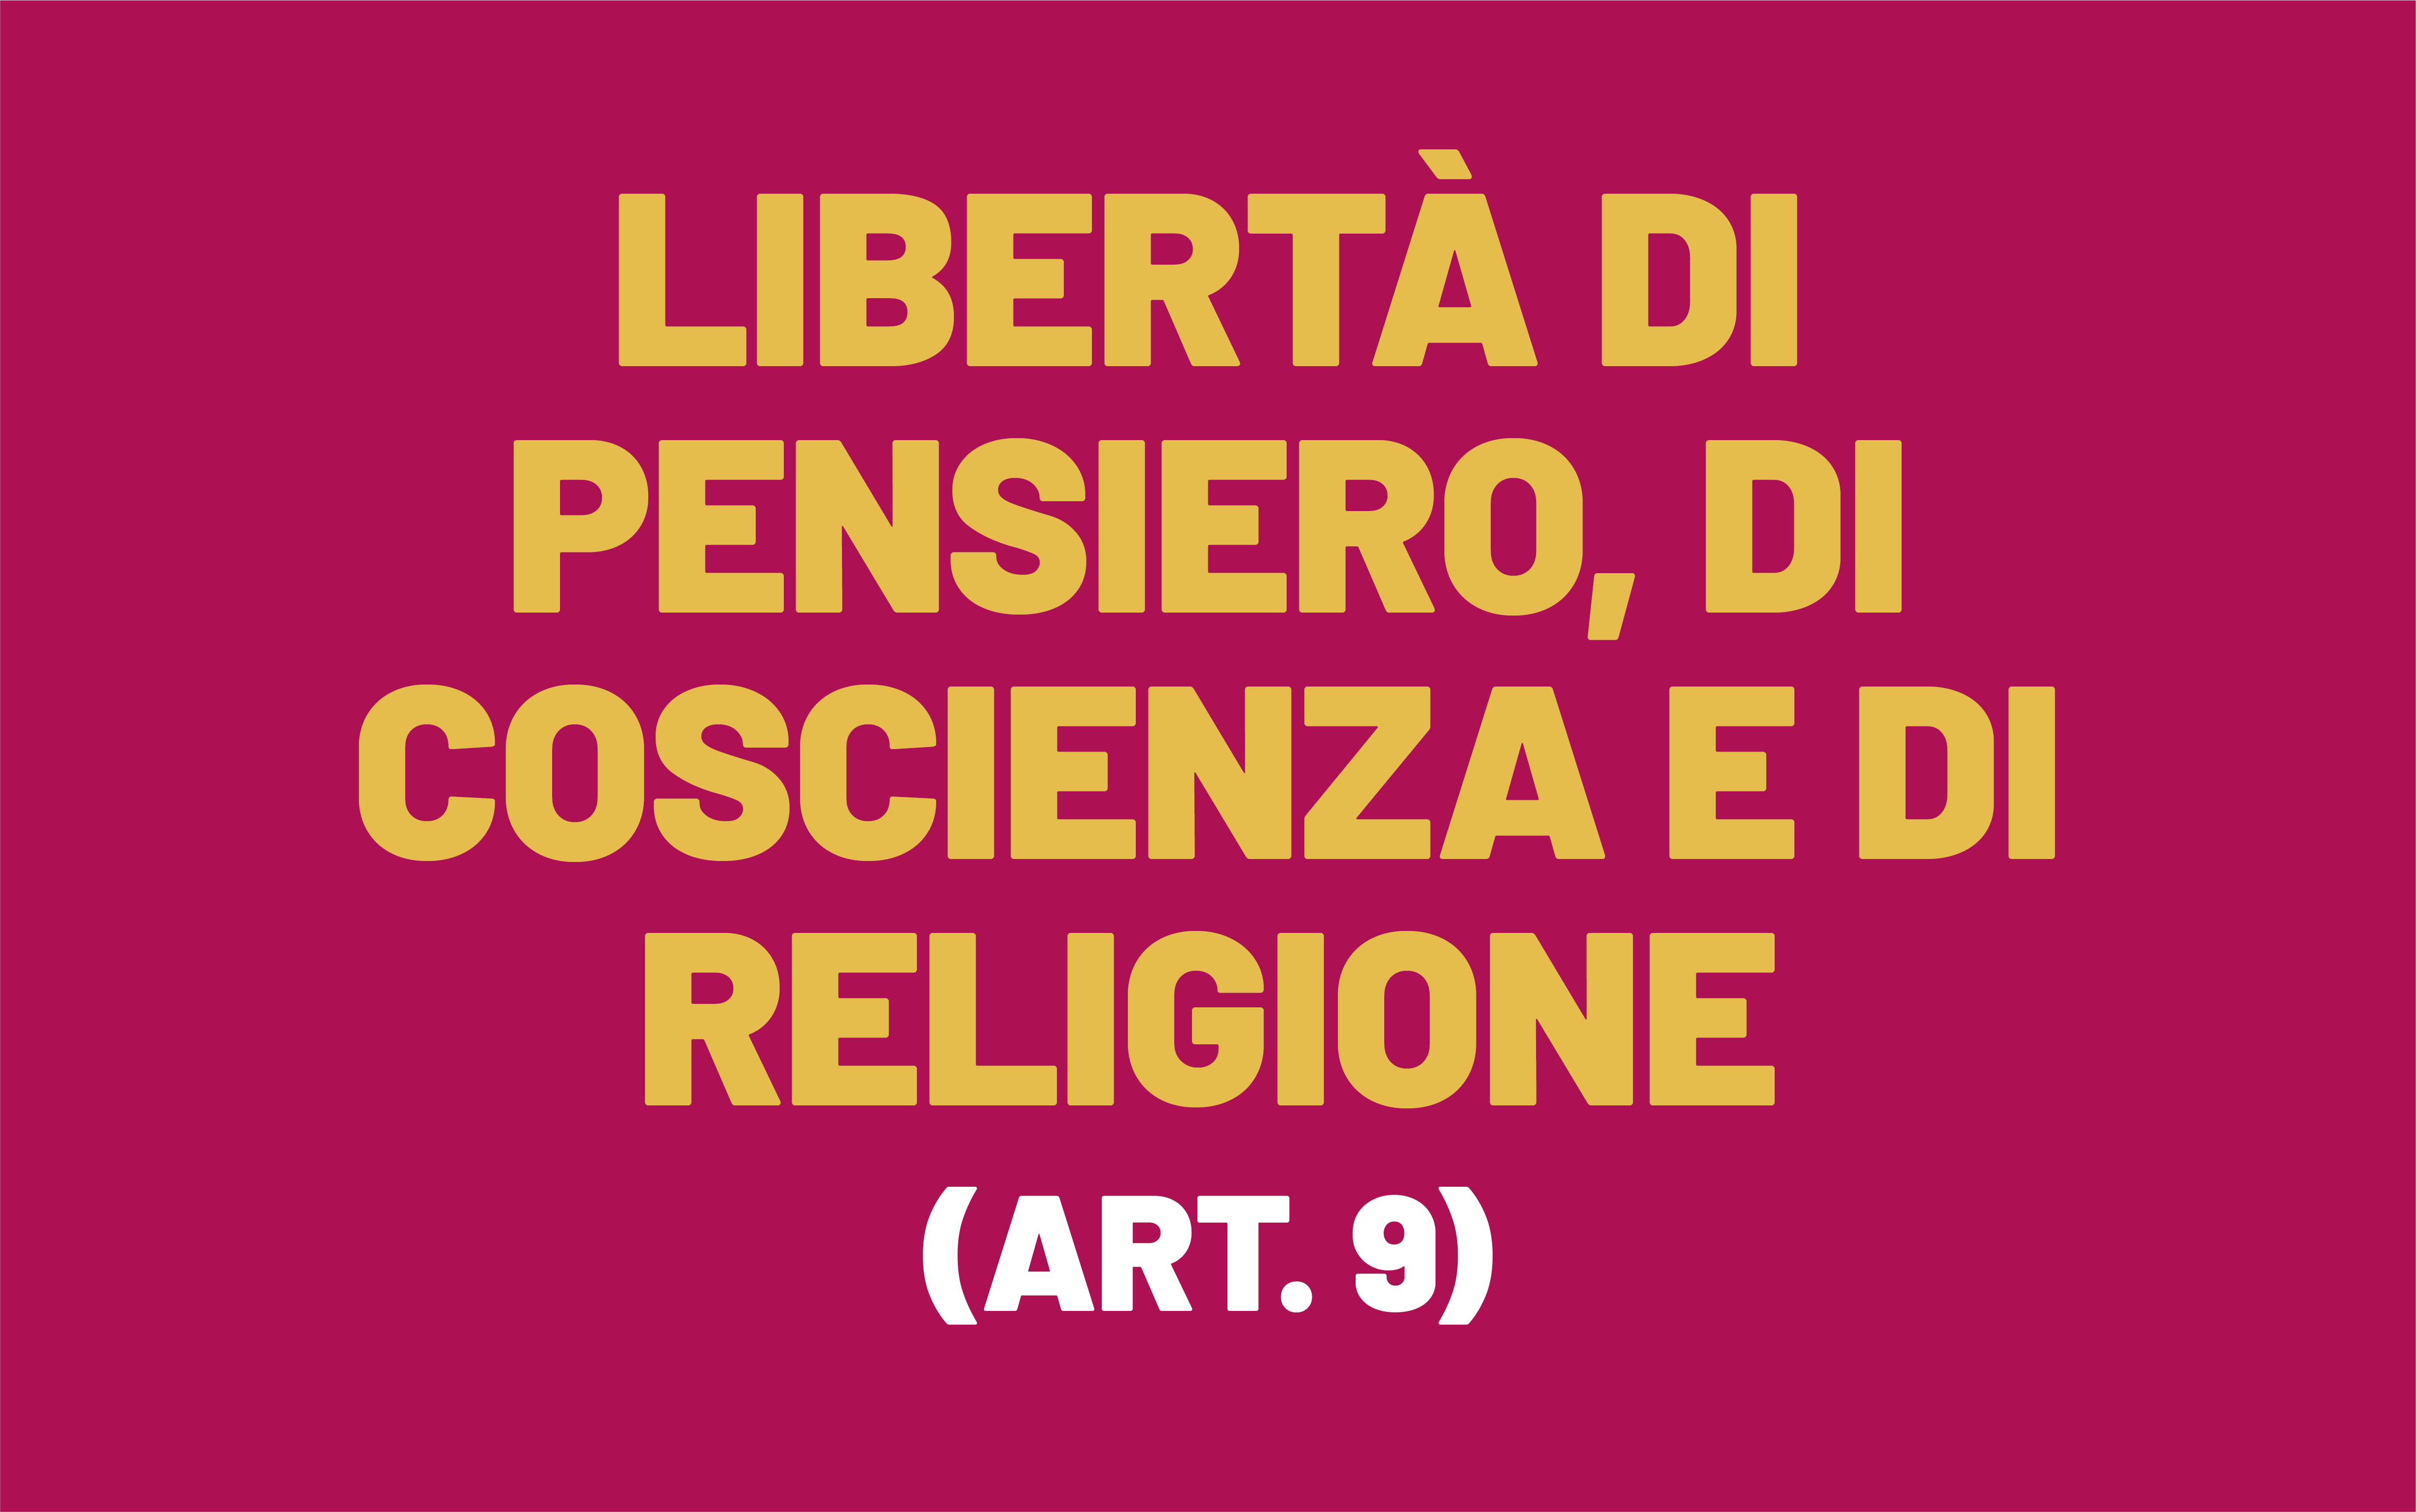 L'immagine si basa sulla formulazione dell'articolo 9 della Convenzione europea dei diritti dell'uomo, che recita: "Libertà di pensiero, di coscienza e di religione".  